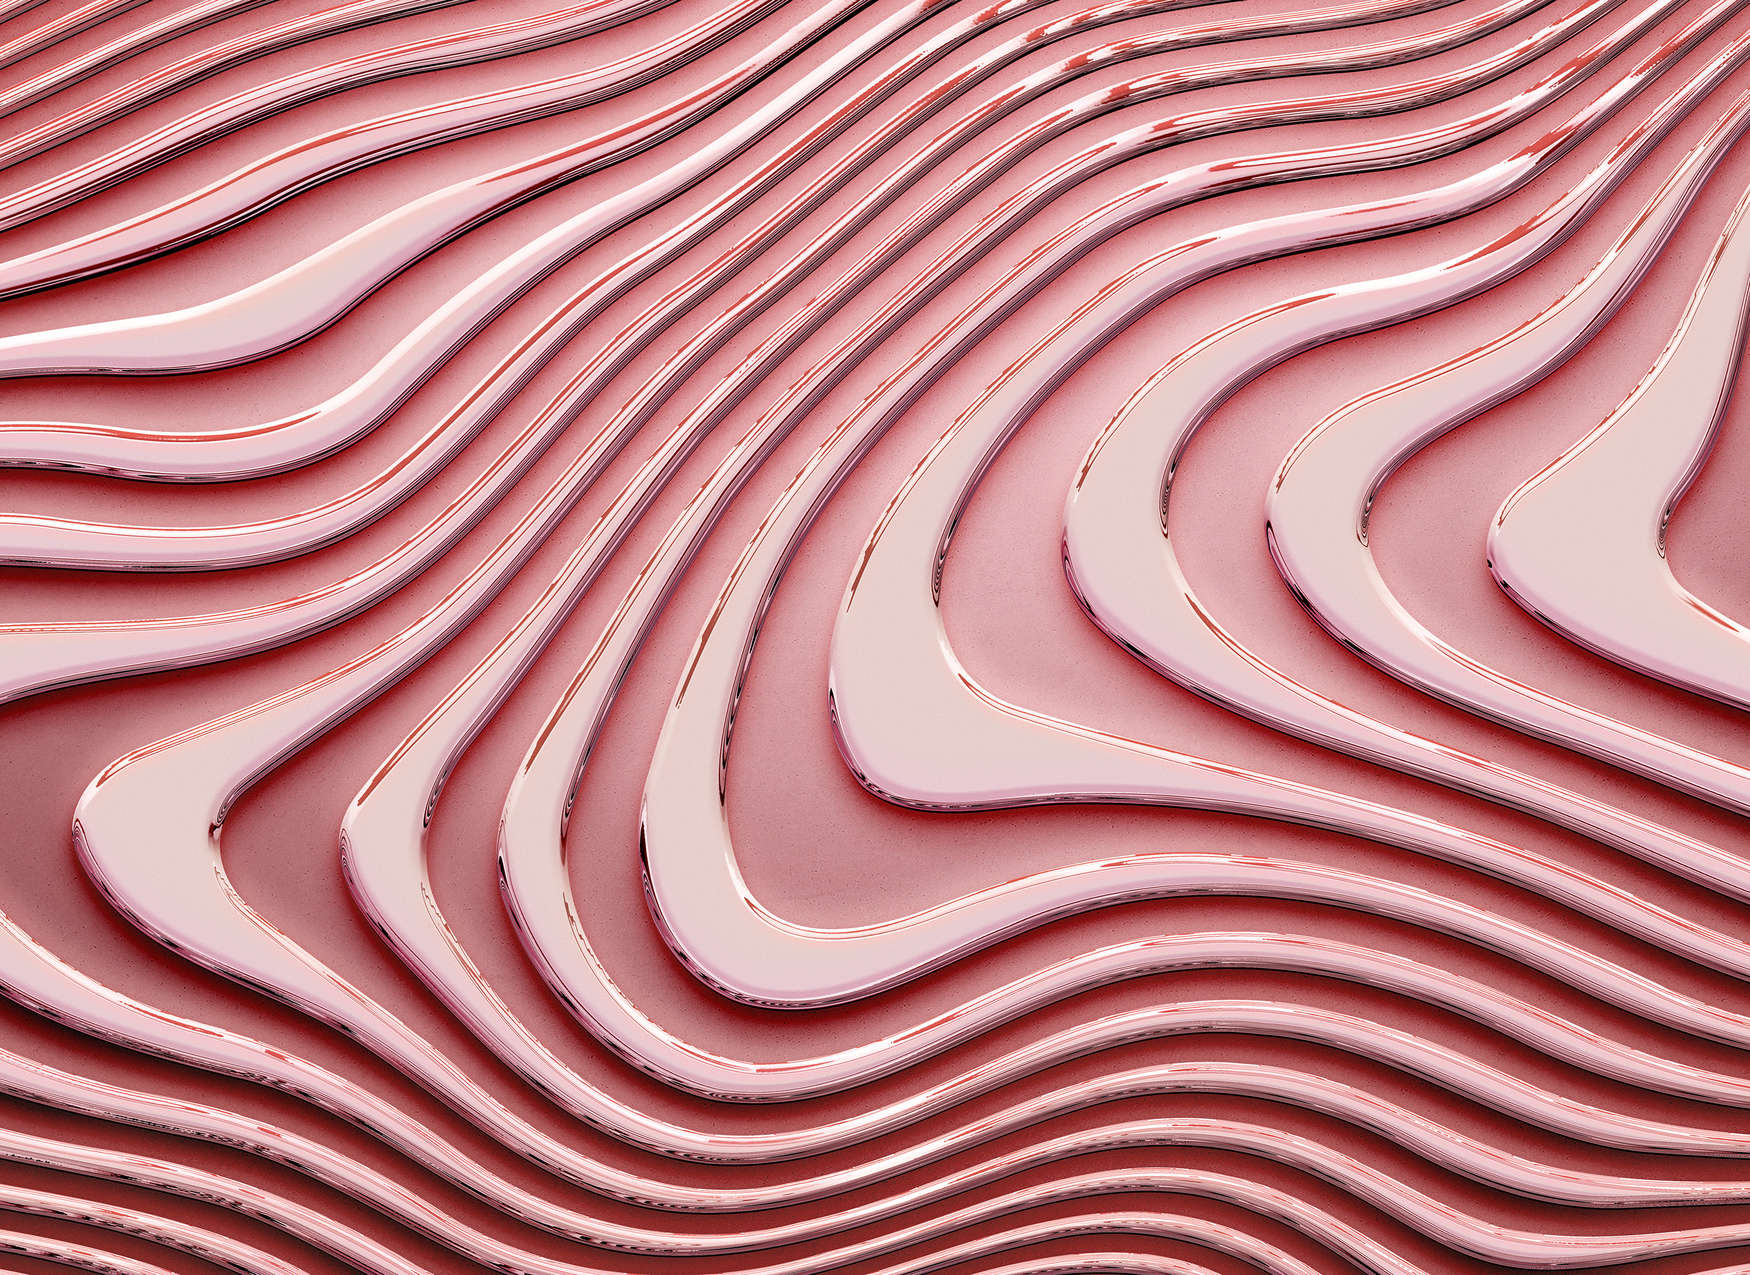             Fototapete mit wellenförmigen Linien und Schatten – Rosa, Pink
        